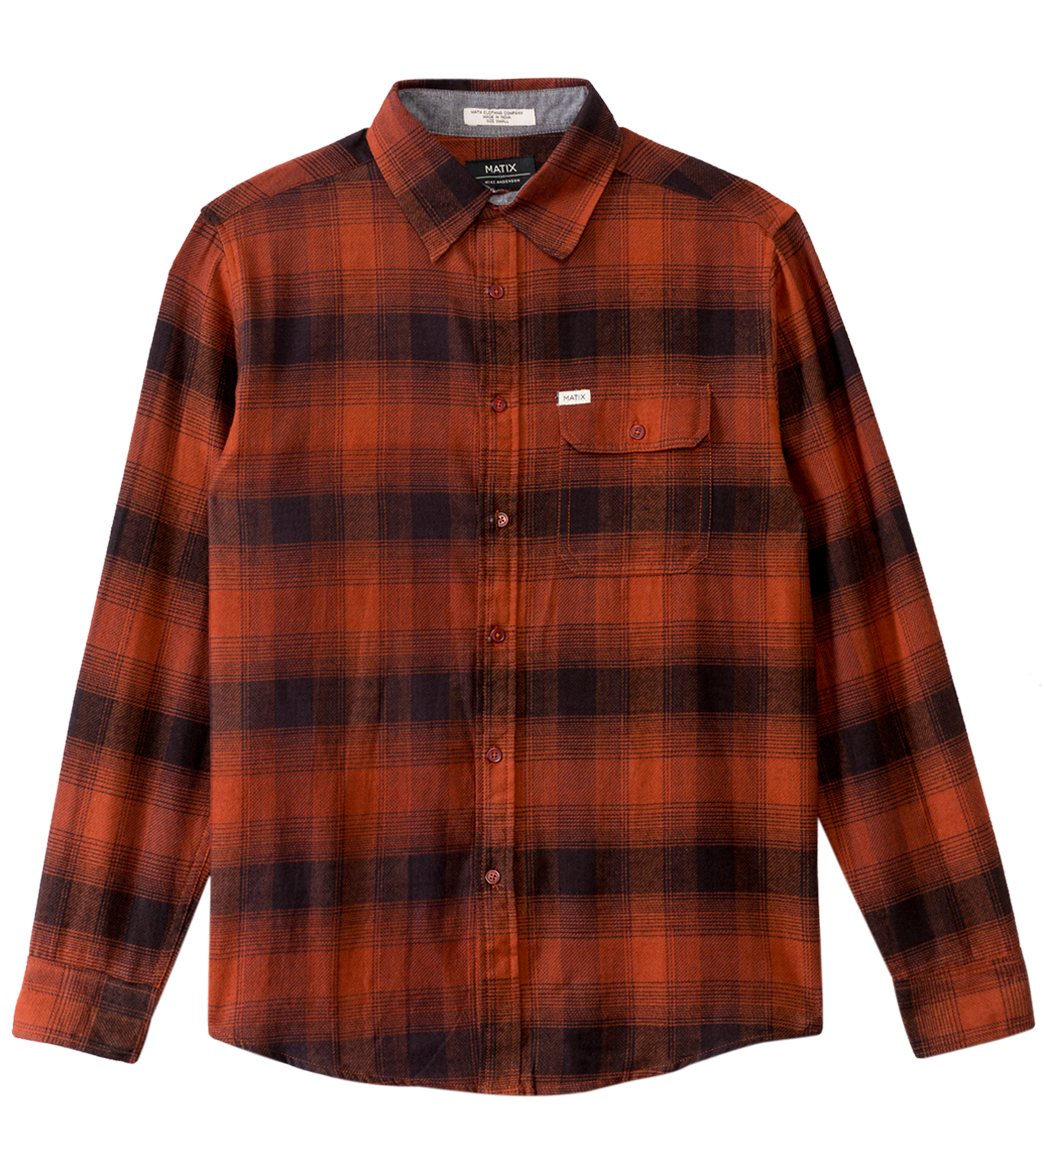 Matix Men's Sleepy Long Sleeve Flannel Shirt - Rust Small Cotton - Swimoutlet.com